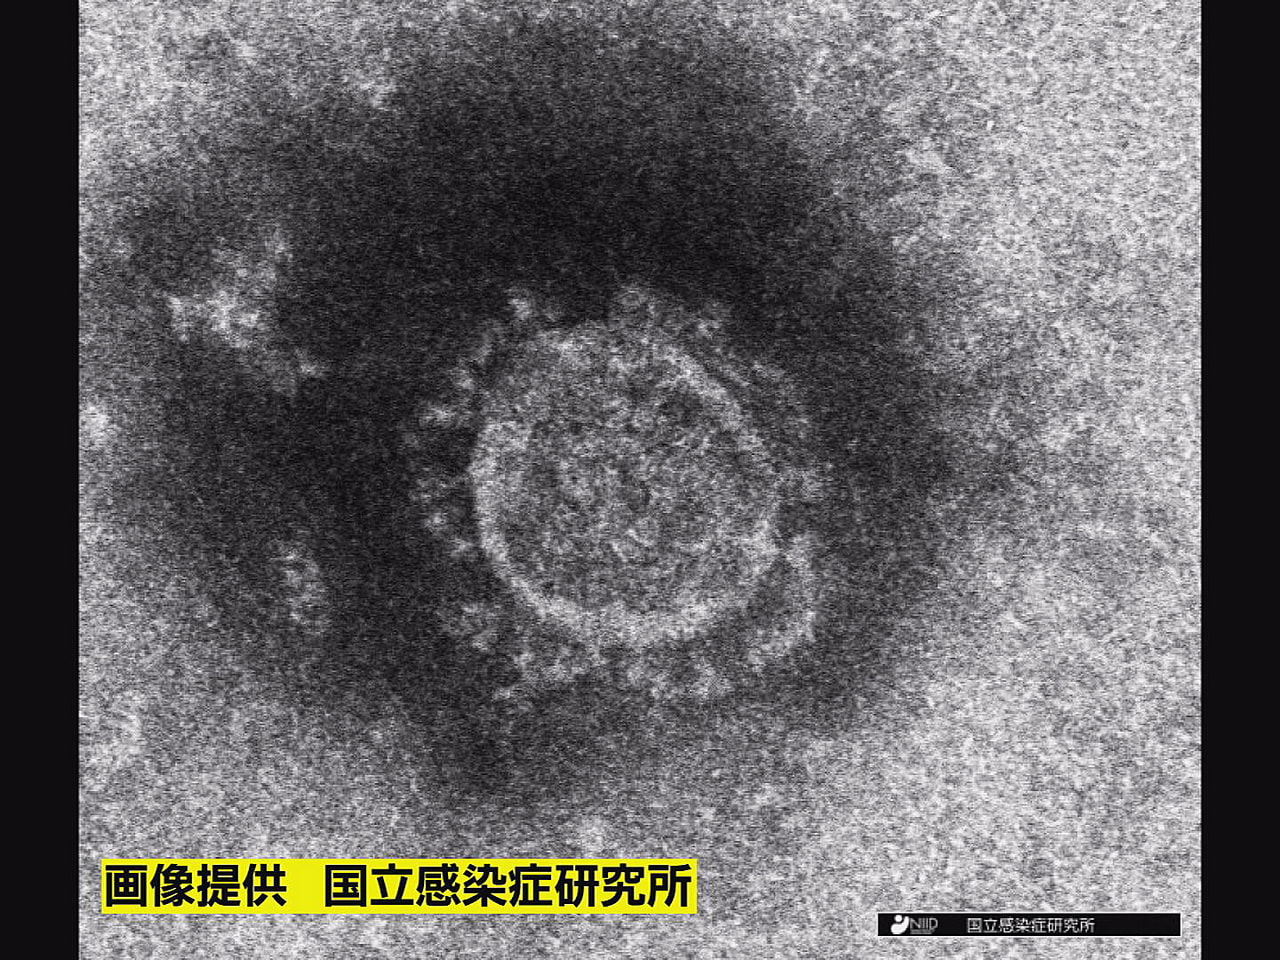 岐阜県は１３日、新型コロナウイルスの感染者が新たに１７９人確認されたと発表しまし...